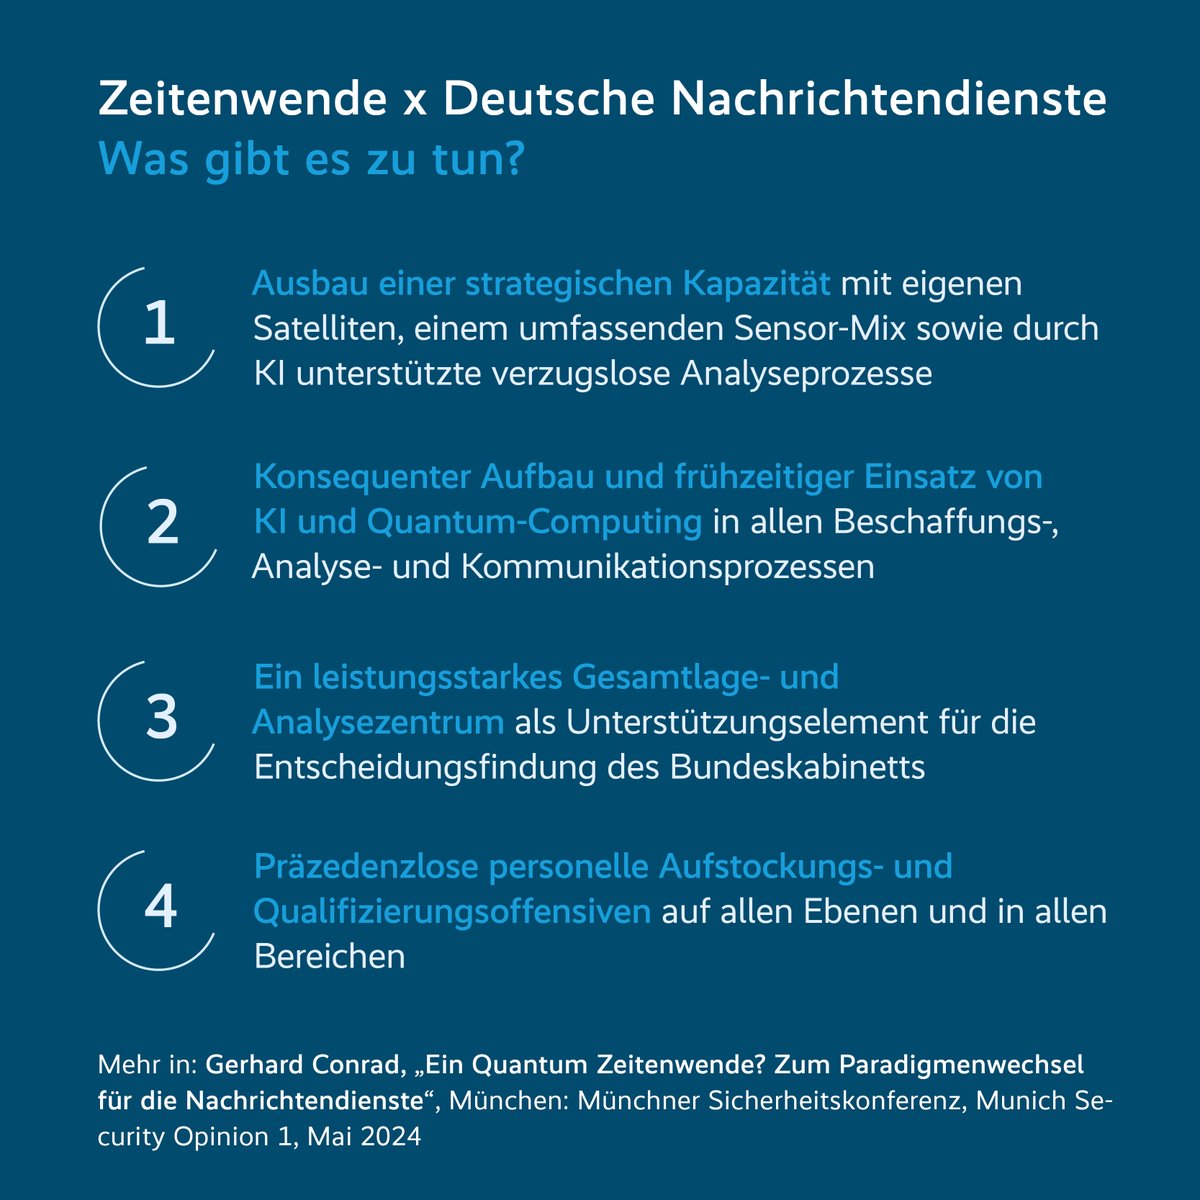 Was müssen die deutschen Nachrichtendienste verändern, um für die Herausforderungen der #Zeitenwende gewappnet zu sein? Ex-BND-Agent Gerhard Conrad hat ein paar Vorschläge. ⬇️ Verfolgt die Diskussion dazu beim #DFS2024 live ab 18 Uhr: youtube.com/watch?v=5SIv9R…